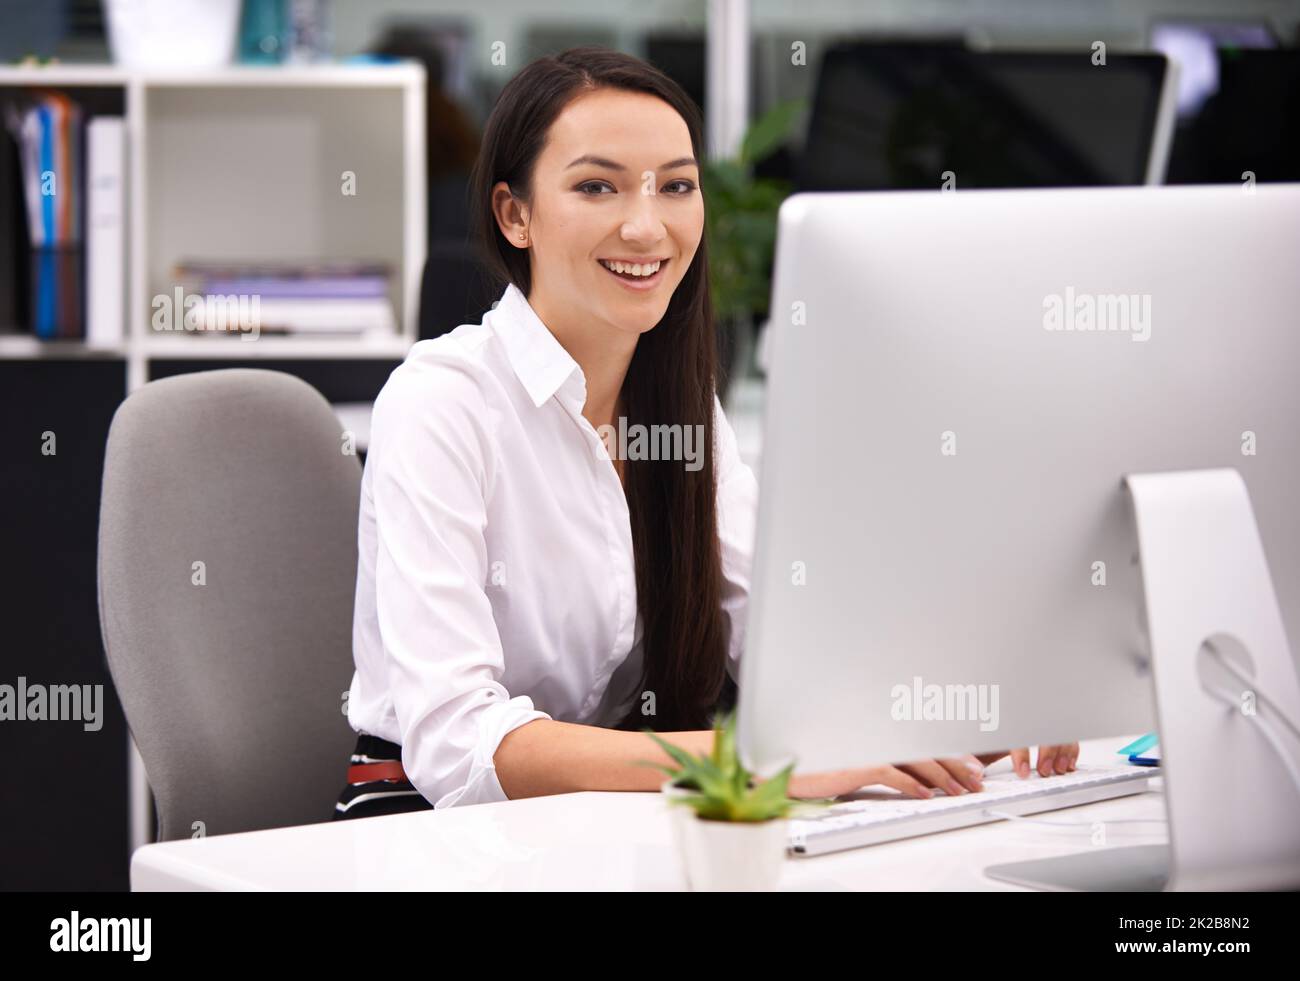 Divertirse en el trabajo. Retrato de una joven empresaria atractiva que trabaja en su escritorio. Foto de stock